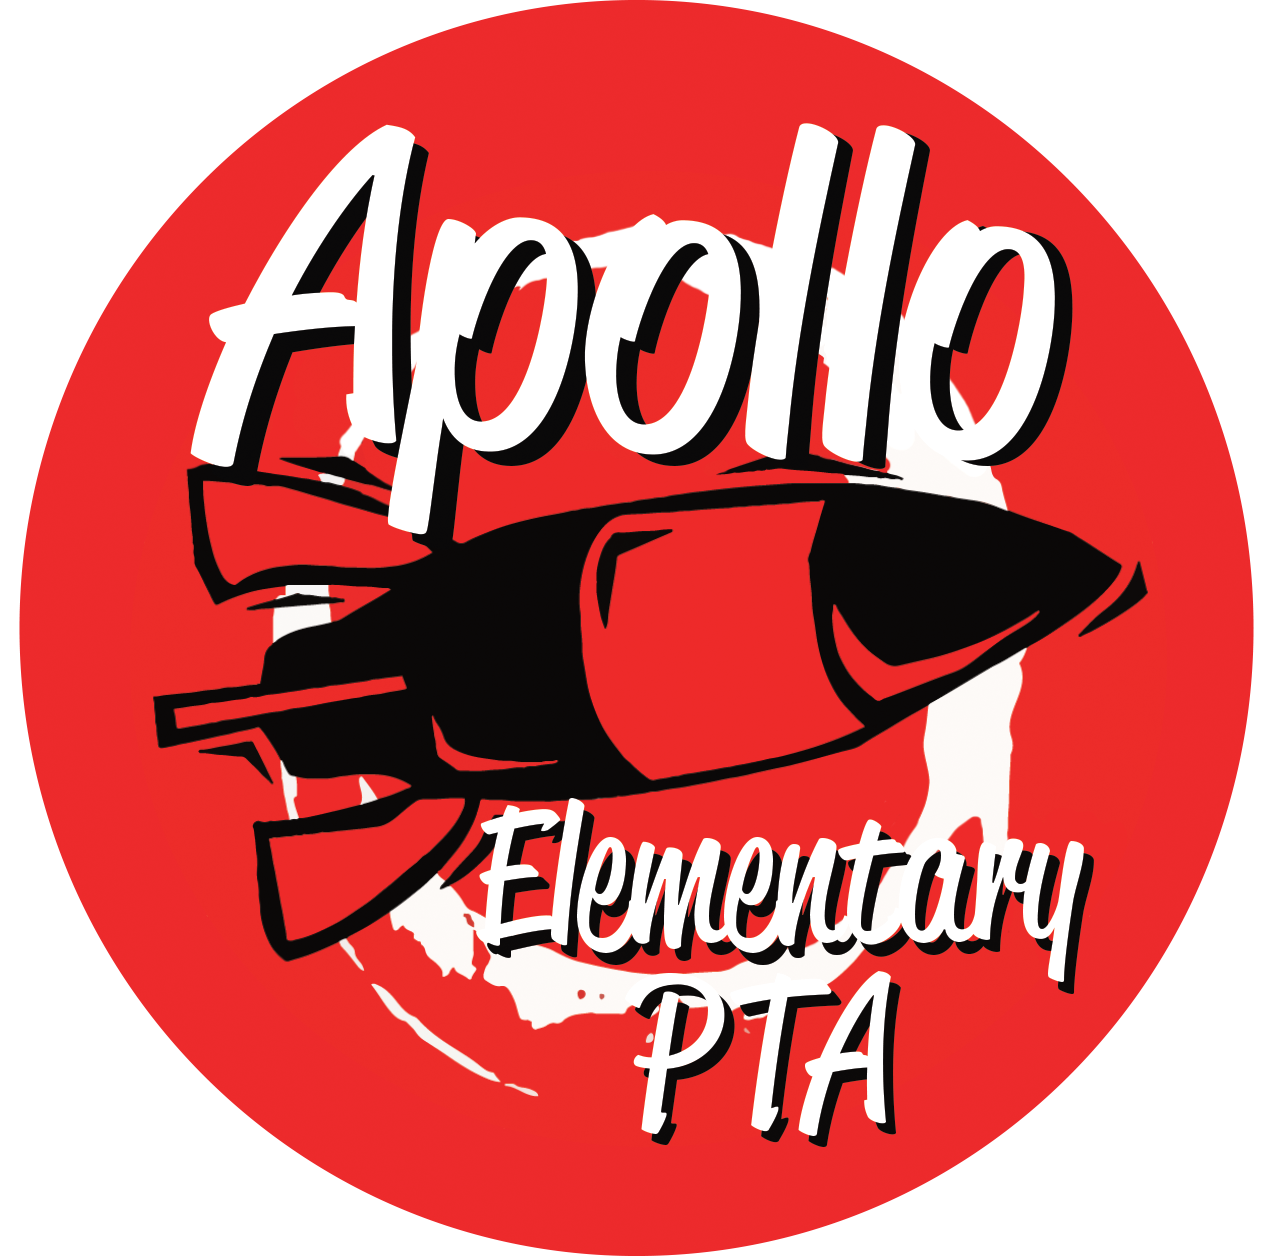 Apollo Elementary PTA